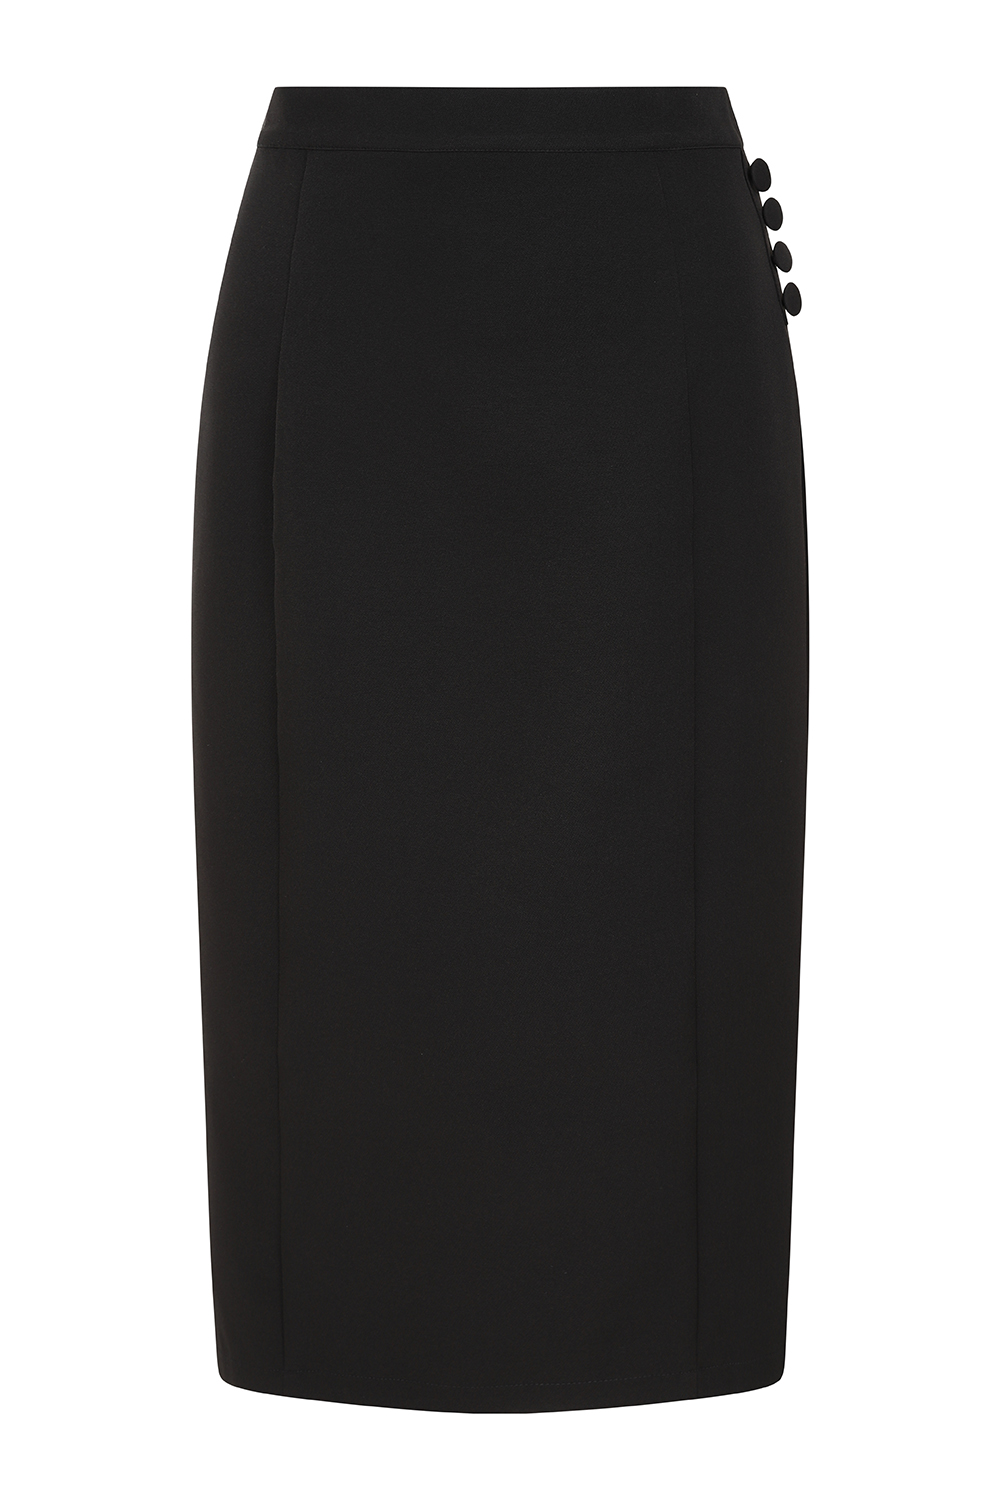 Riley Wiggle Skirt in Black